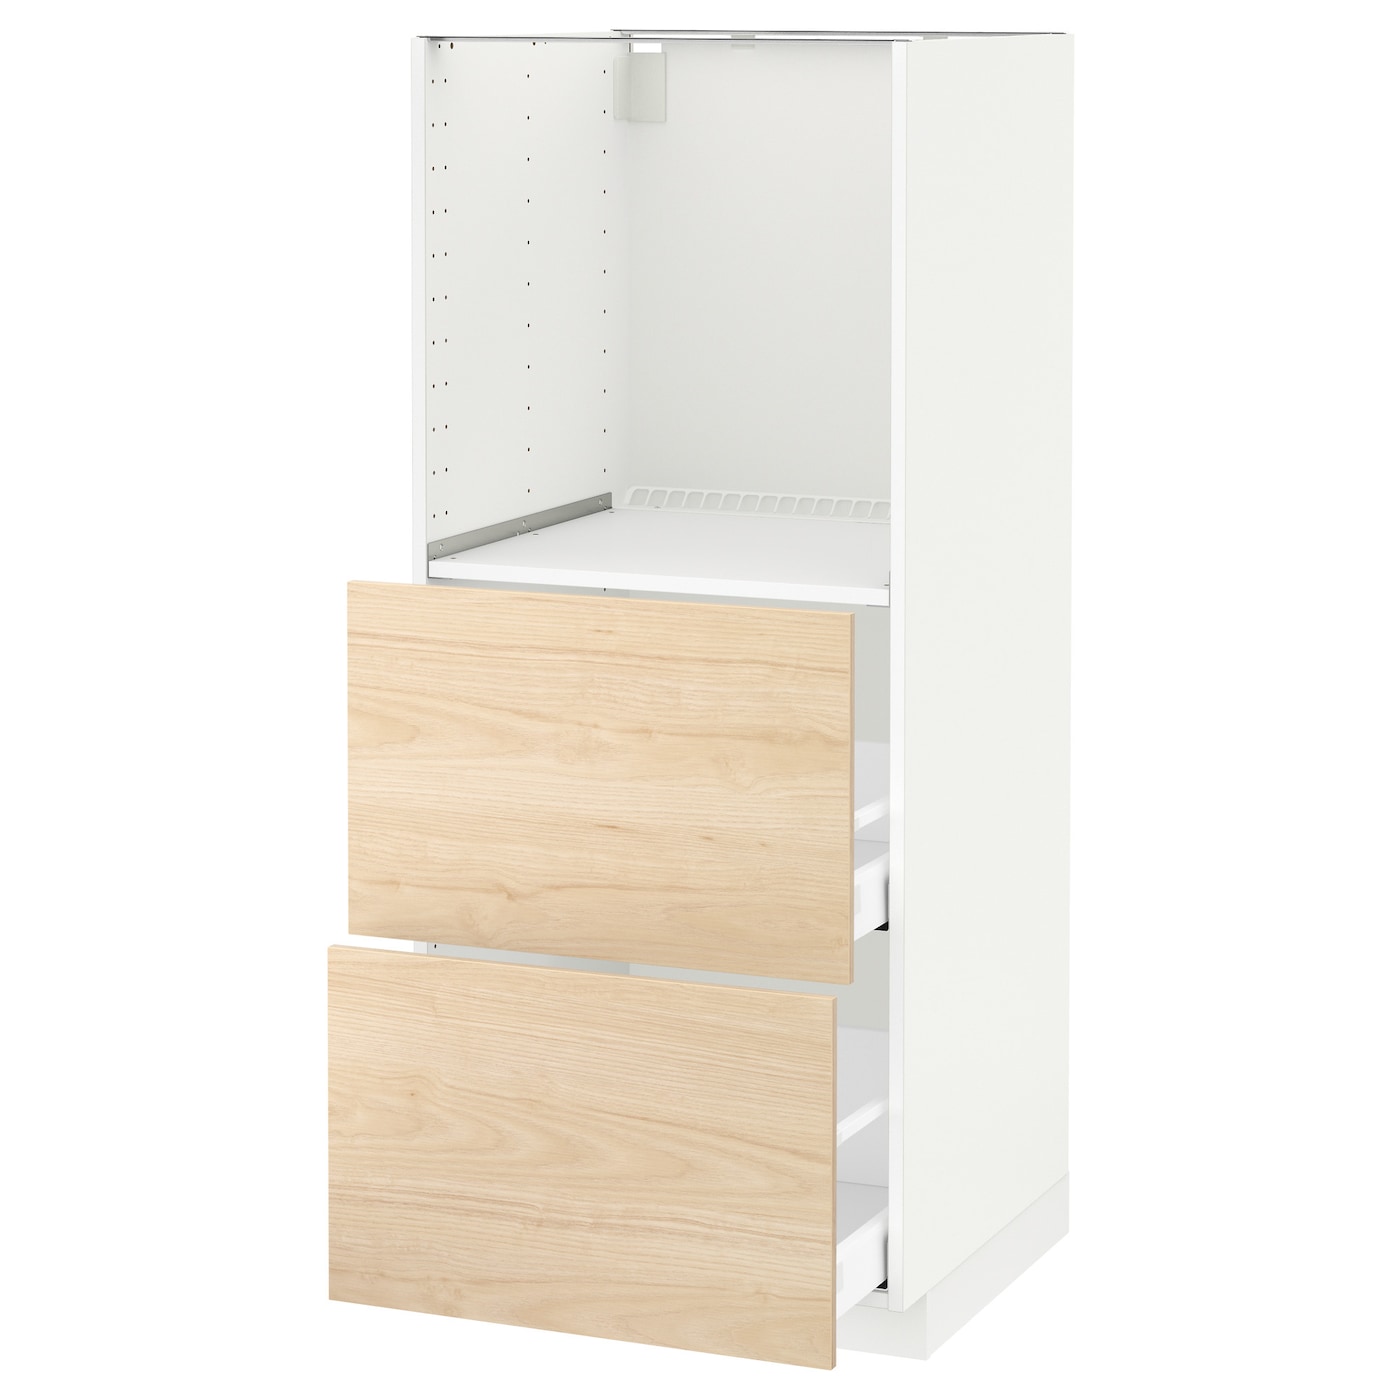 Напольный шкаф  - IKEA METOD MAXIMERA, 148x61,6x60см, белый/светло-коричневый, МЕТОД МАКСИМЕРА ИКЕА